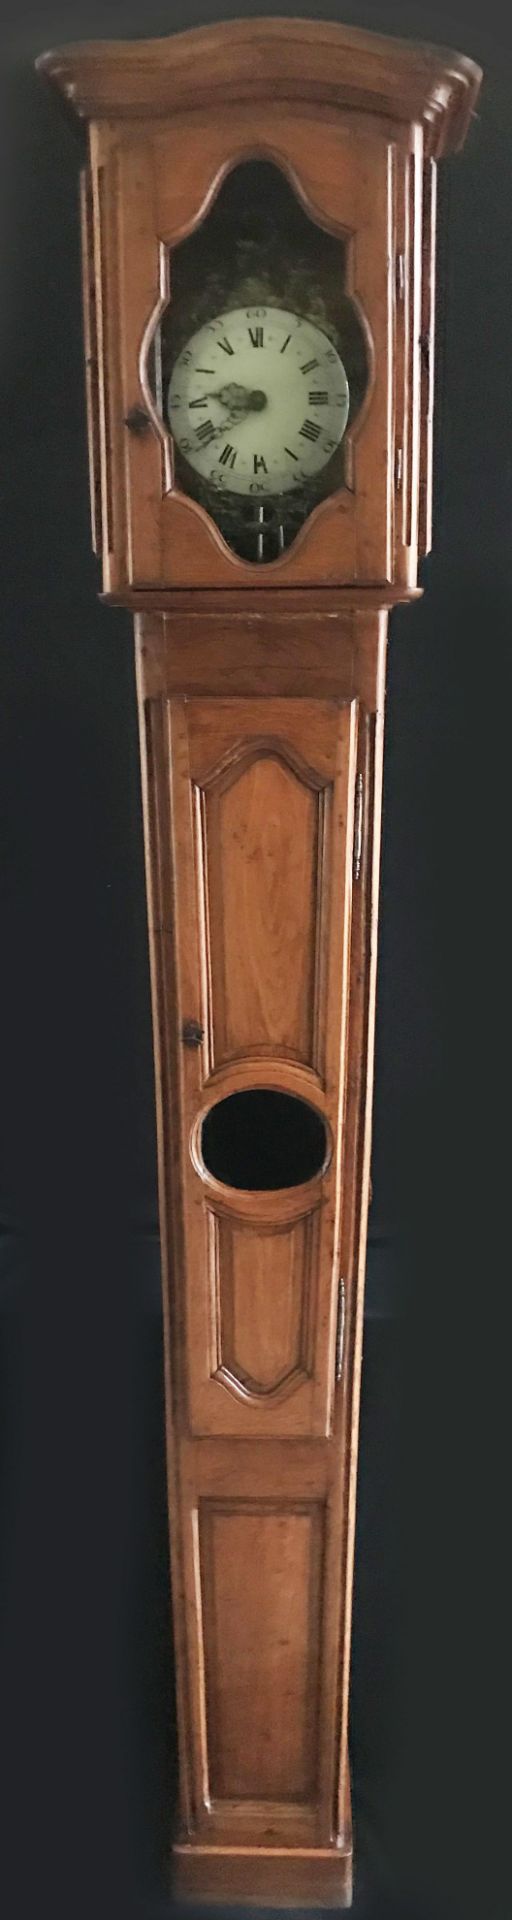 Standuhr, um 1800, in Holzgehäuse, das sich nach unten leicht verjüngt, einfaches Uhrwerk mit